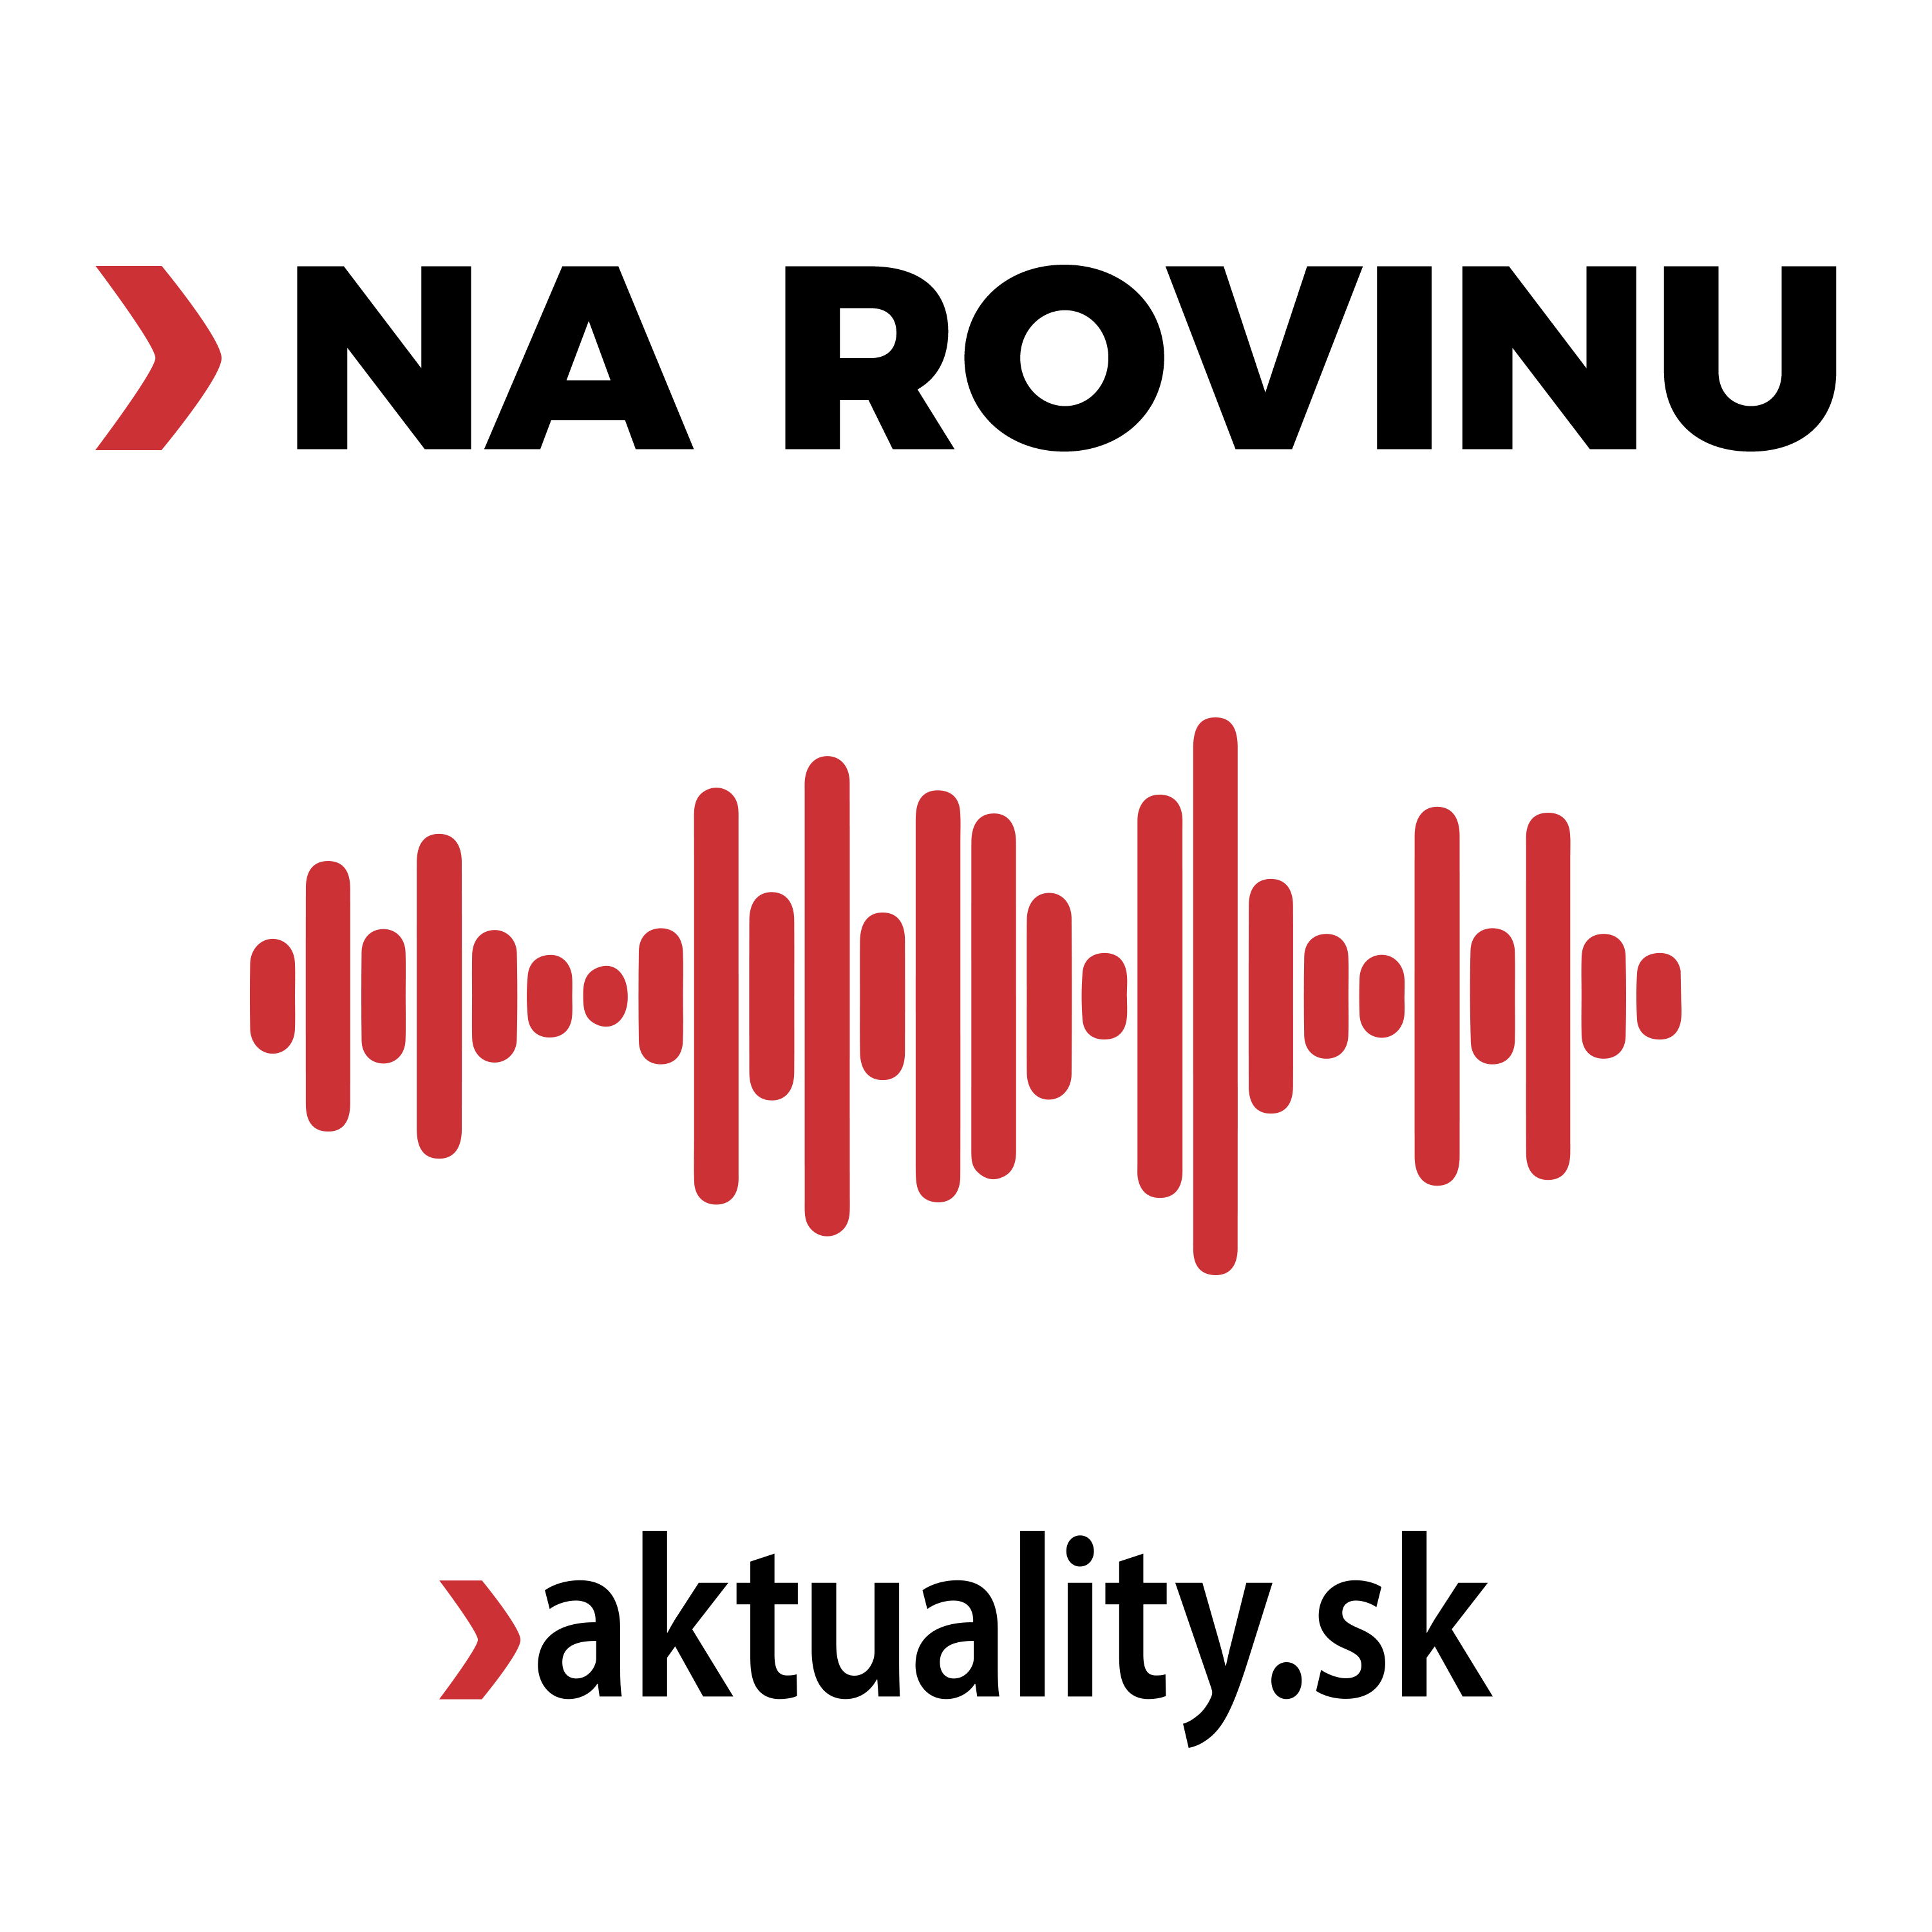 Artwork for NA ROVINU|aktuality.sk